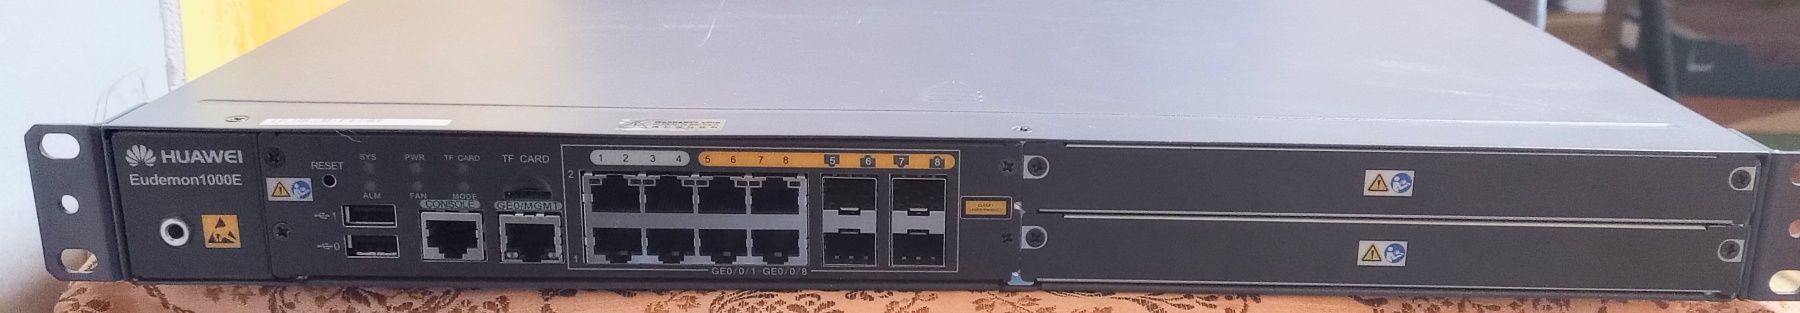 HUAWEI Firewall Eudemon 1000E-X3